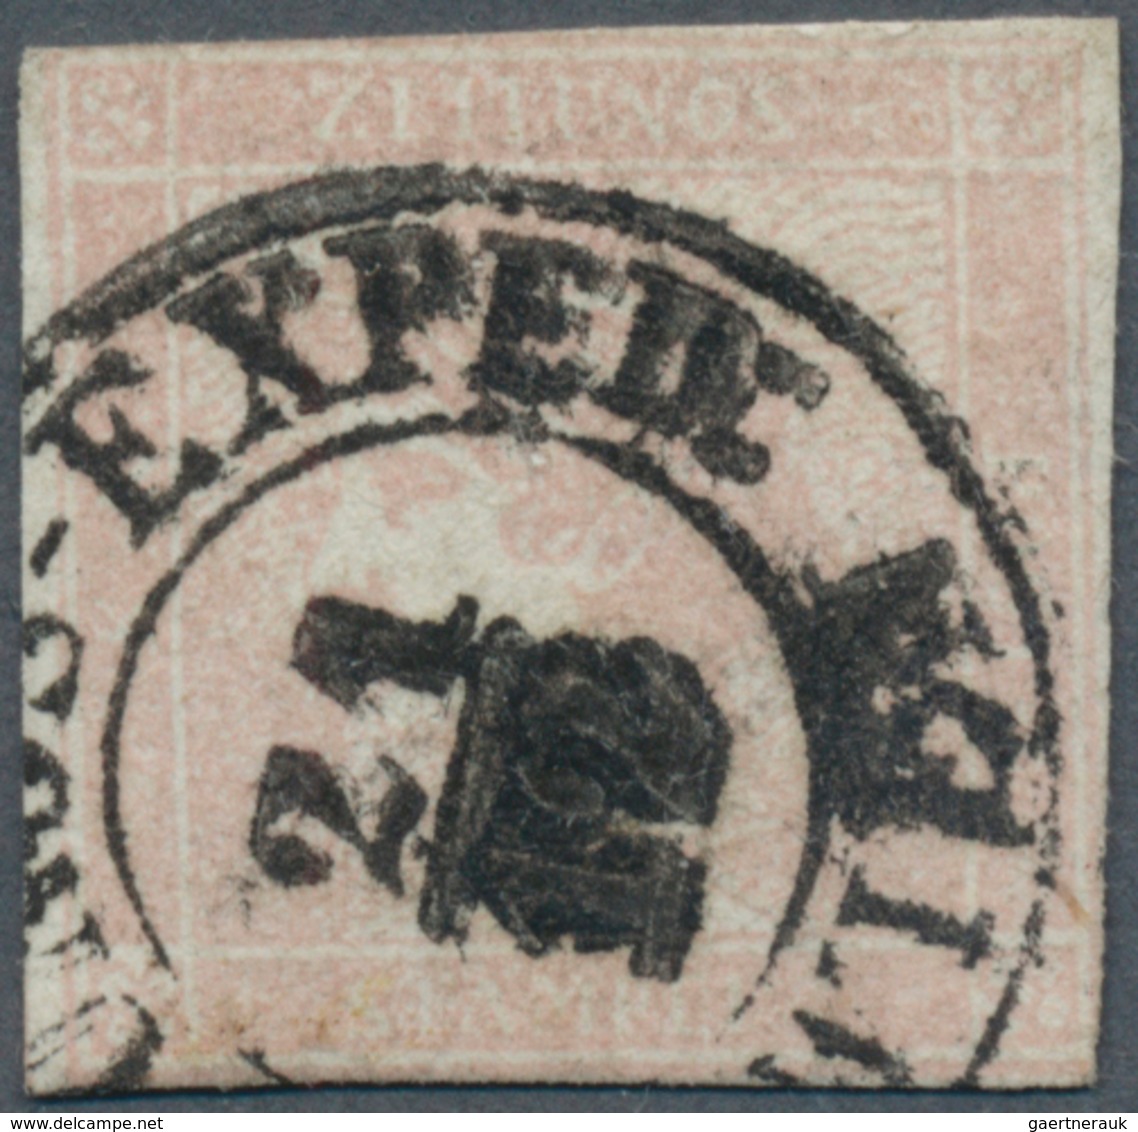 Österreich: 1851, 30 Kr. Rosa In Type I B, Sogenannter "ROSA MERKUR" Mit Zentrischem K2 "ZEITUNGS-EX - Other & Unclassified